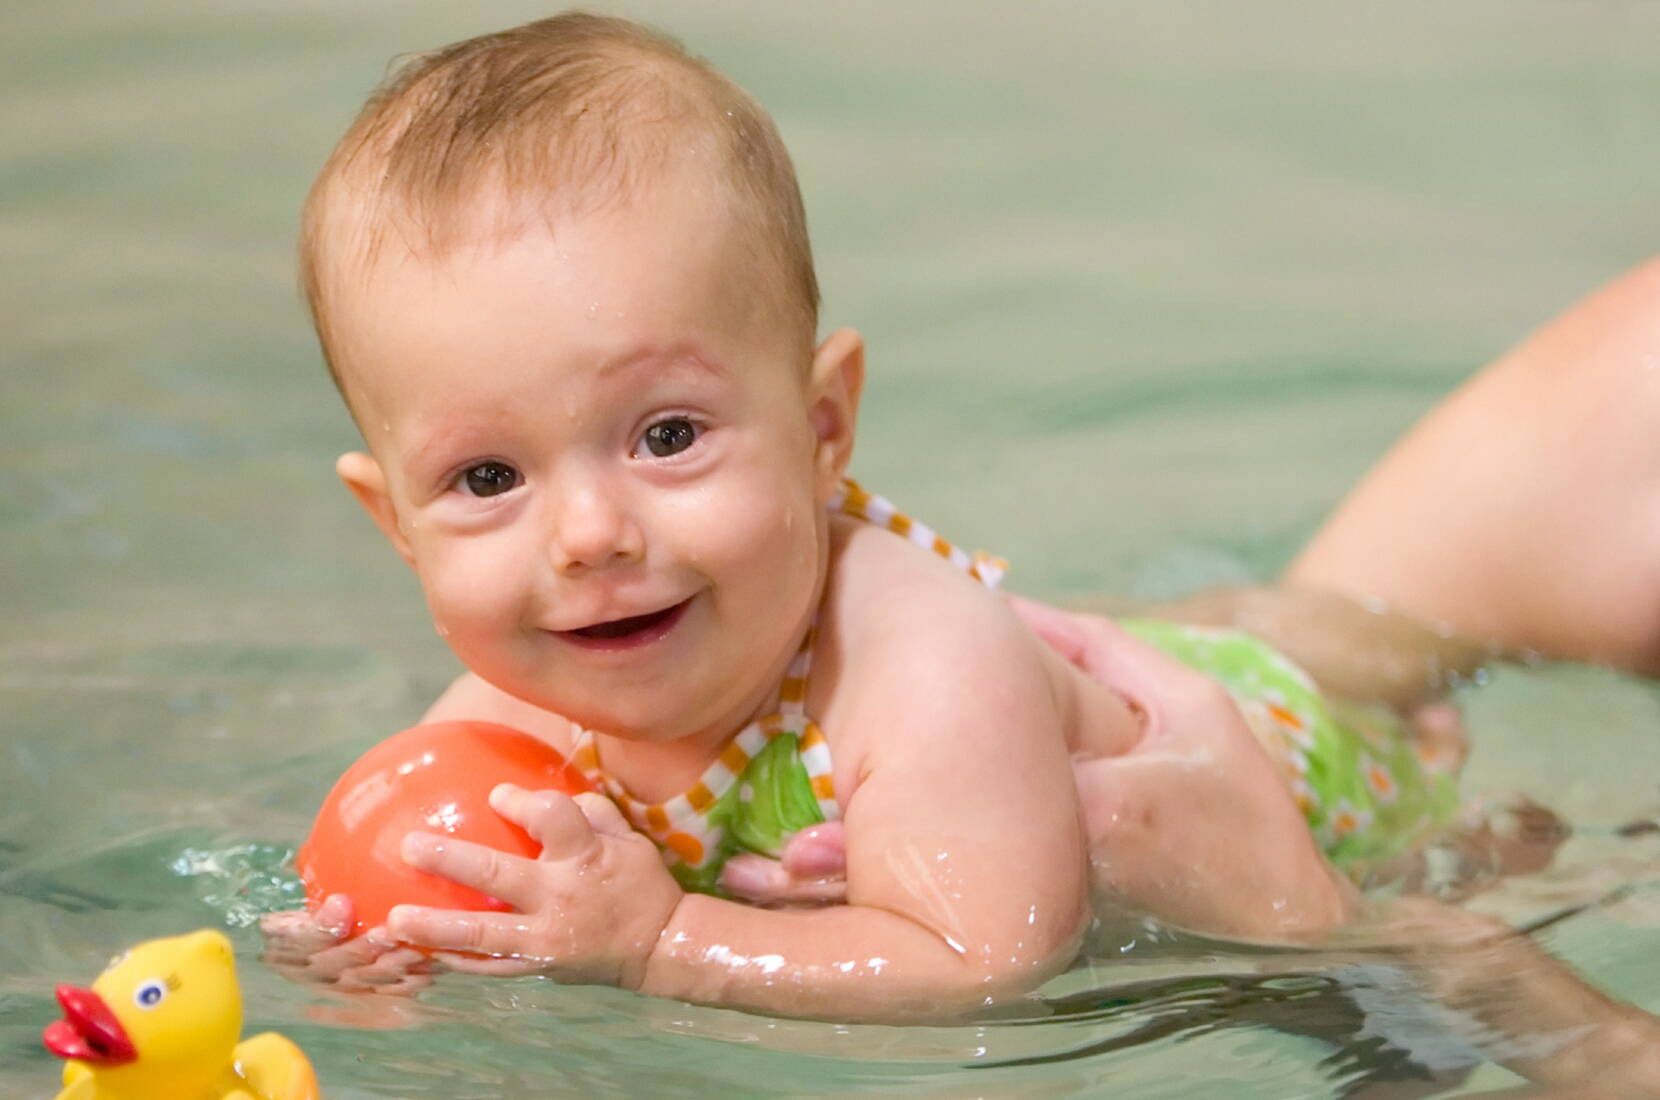 Jusqu'à CHF 100.- de réduction sur les cours de natation de Schildkrötli-Swimmers. Téléchargez maintenant le bon et profitez d'une réduction allant jusqu'à CHF 100.- sur votre prochain cours de natation (bébé ou parent-enfant). 